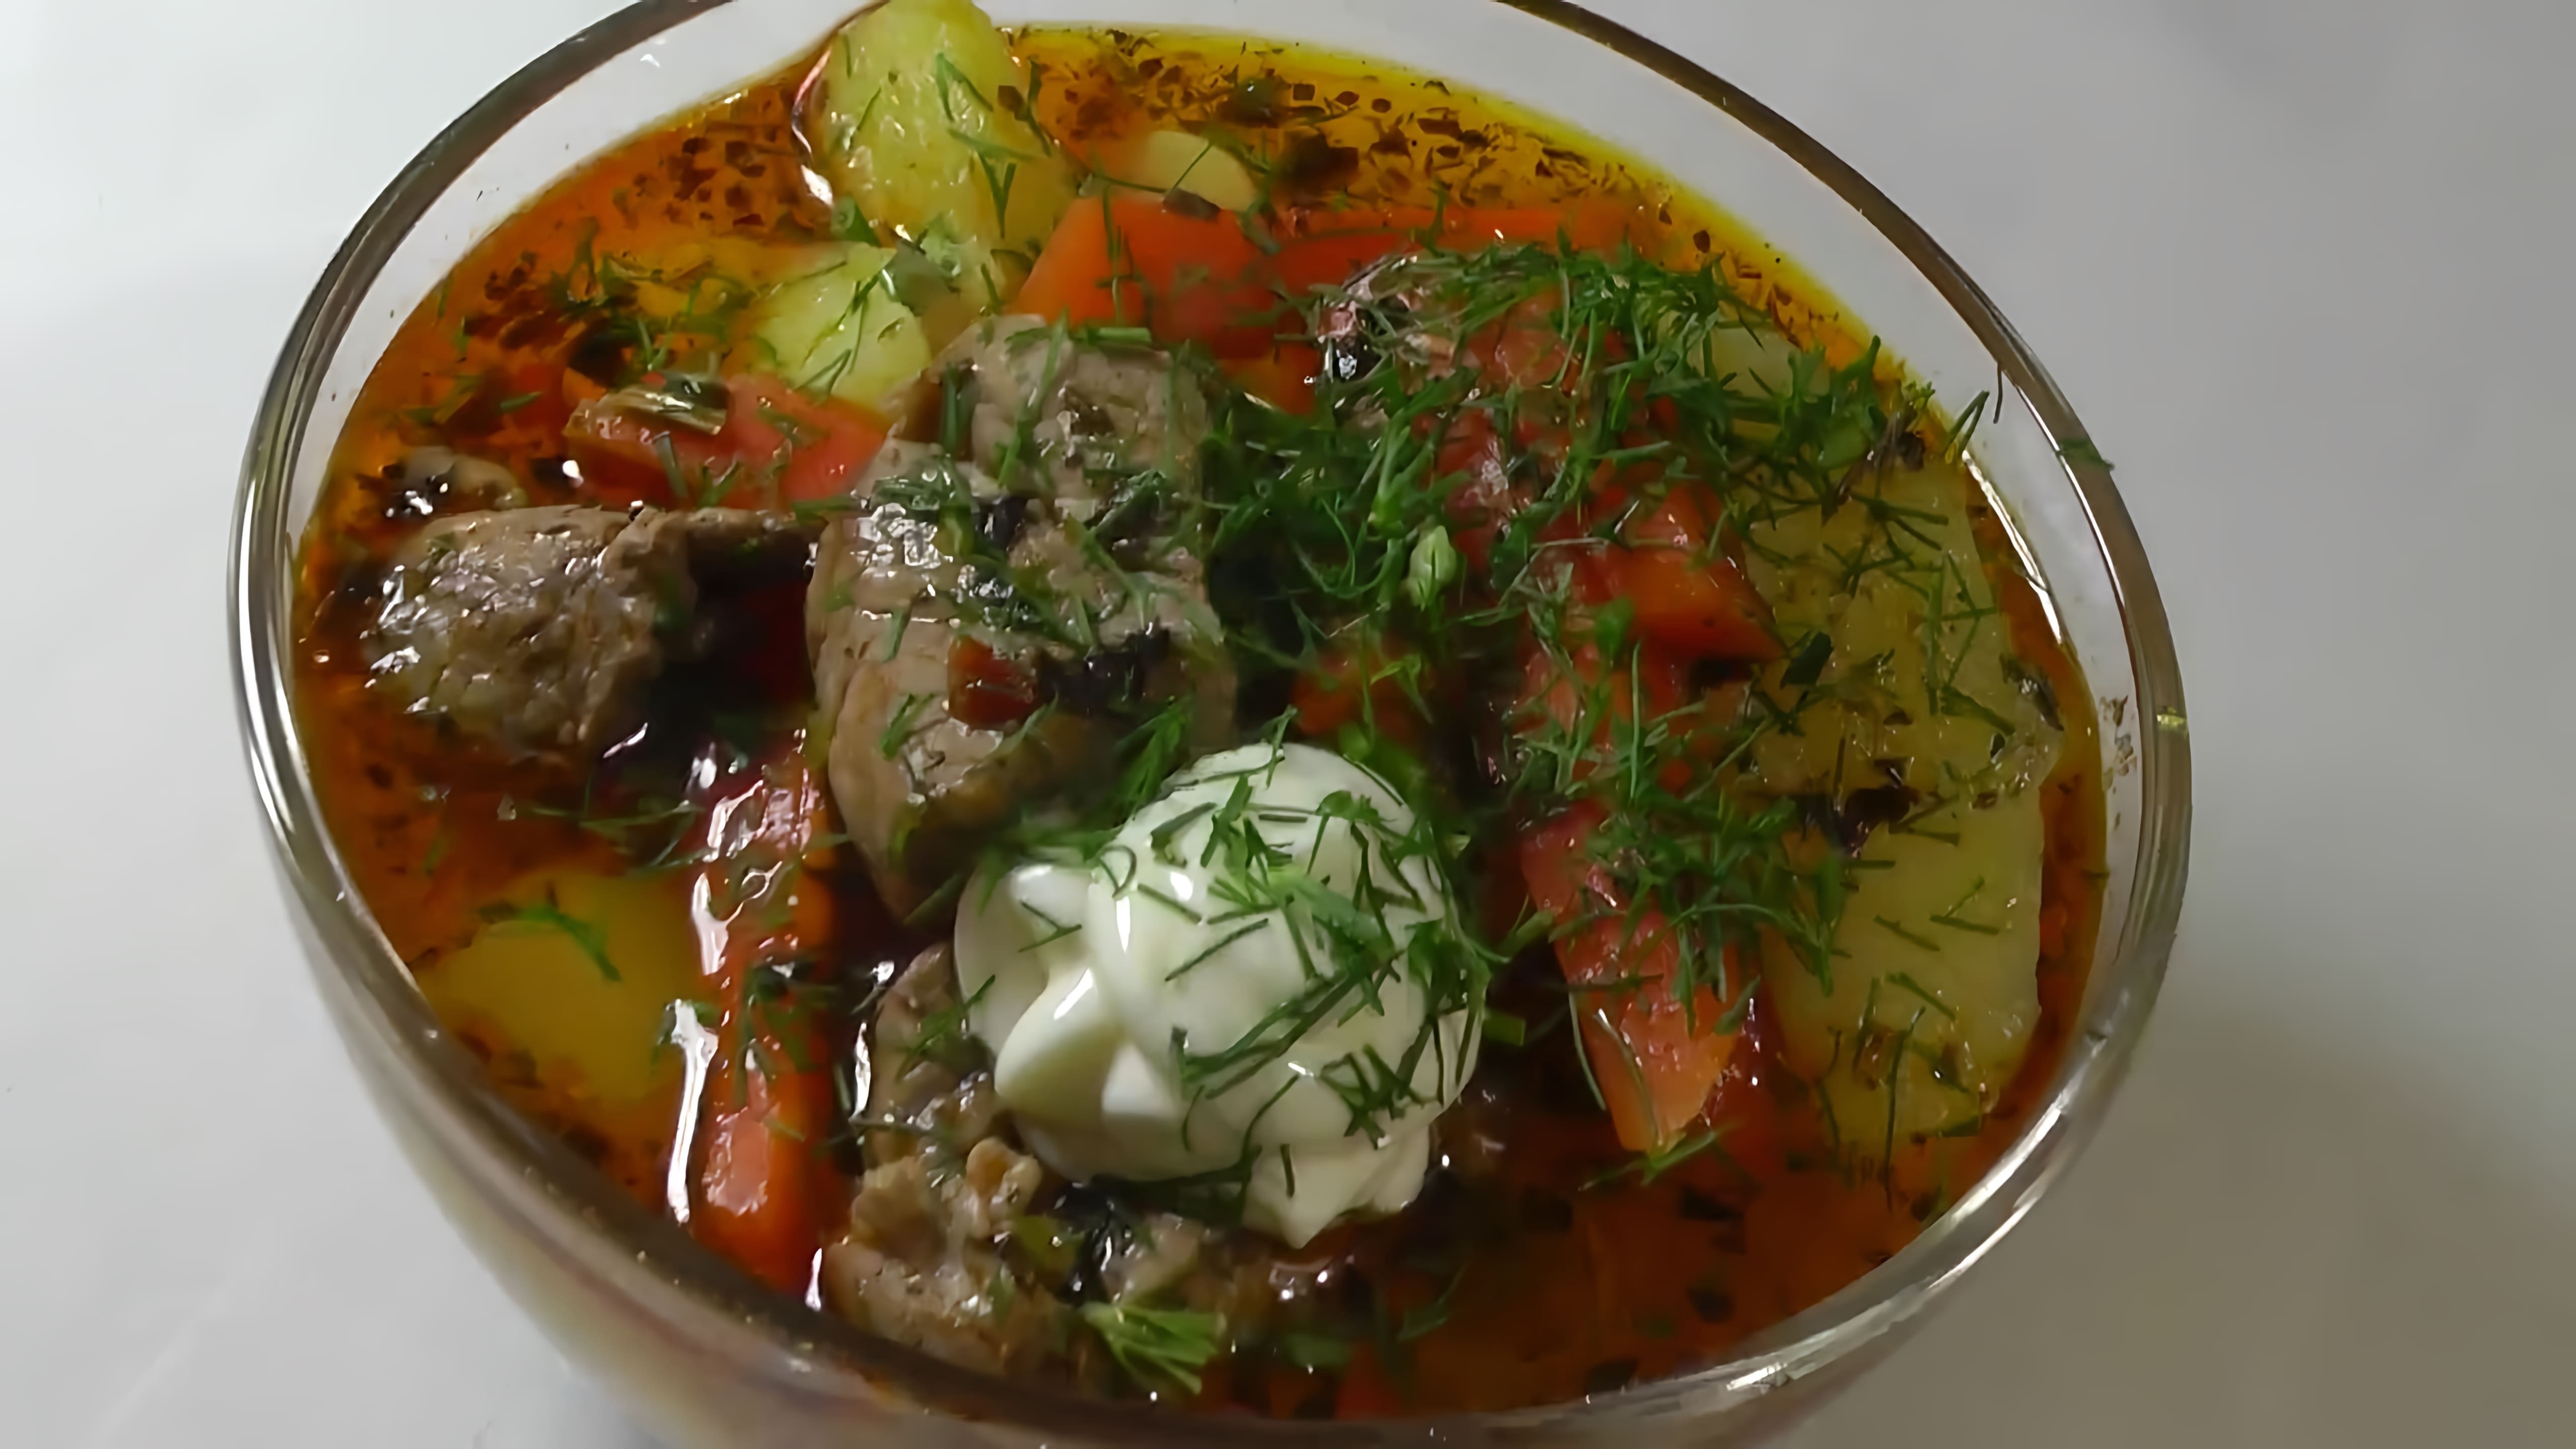 В этом видео демонстрируется рецепт приготовления картофельного соуса с мясом